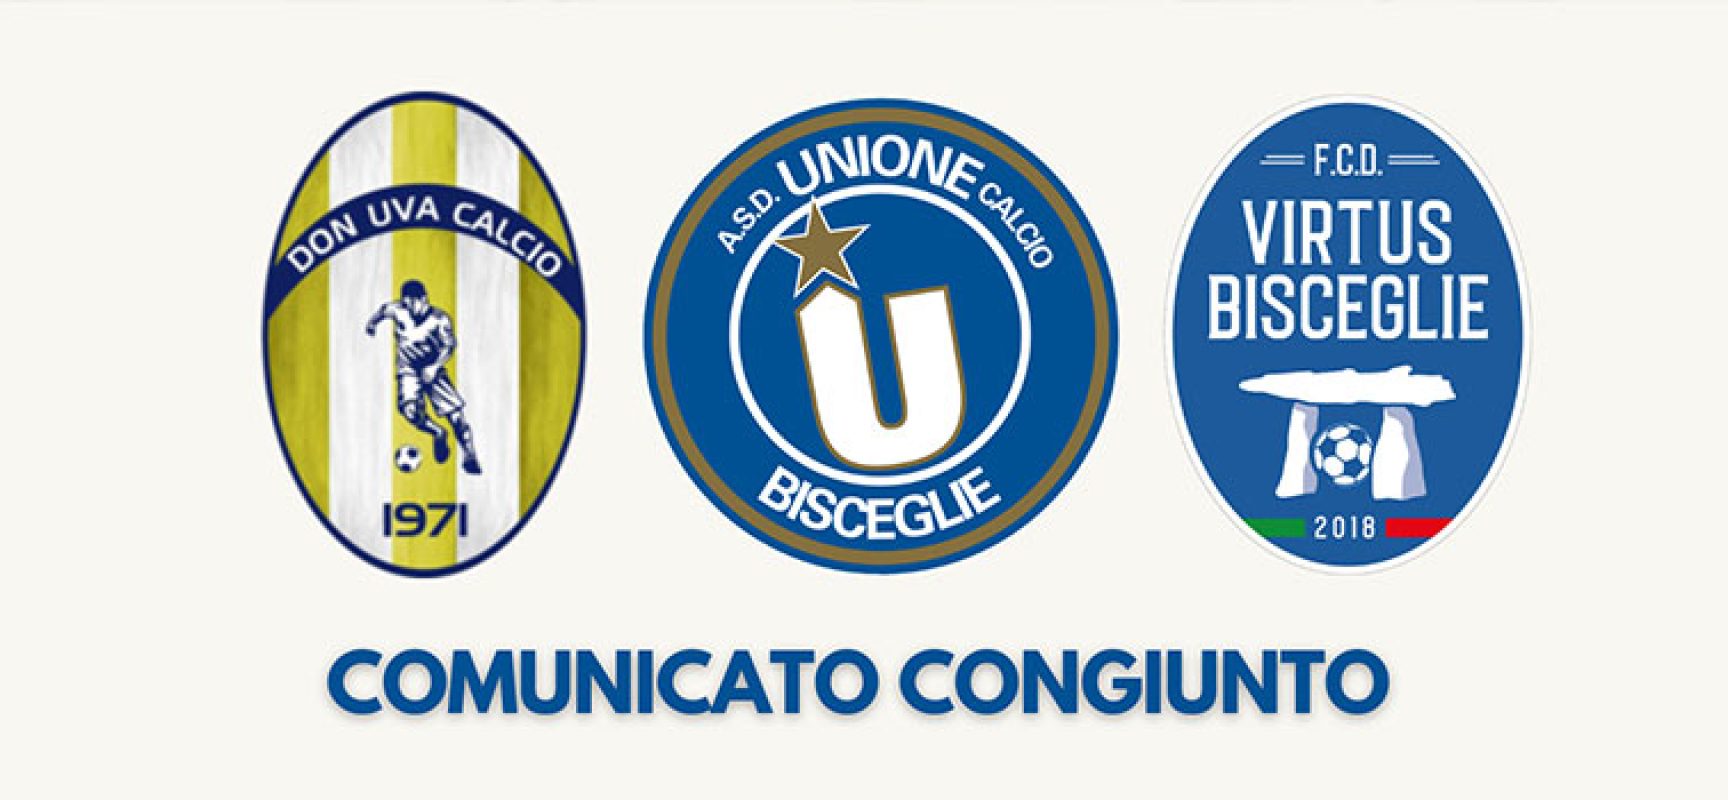 Don Uva, Unione Calcio e Virtus Bisceglie: nuova partnership a livello di settore giovanile